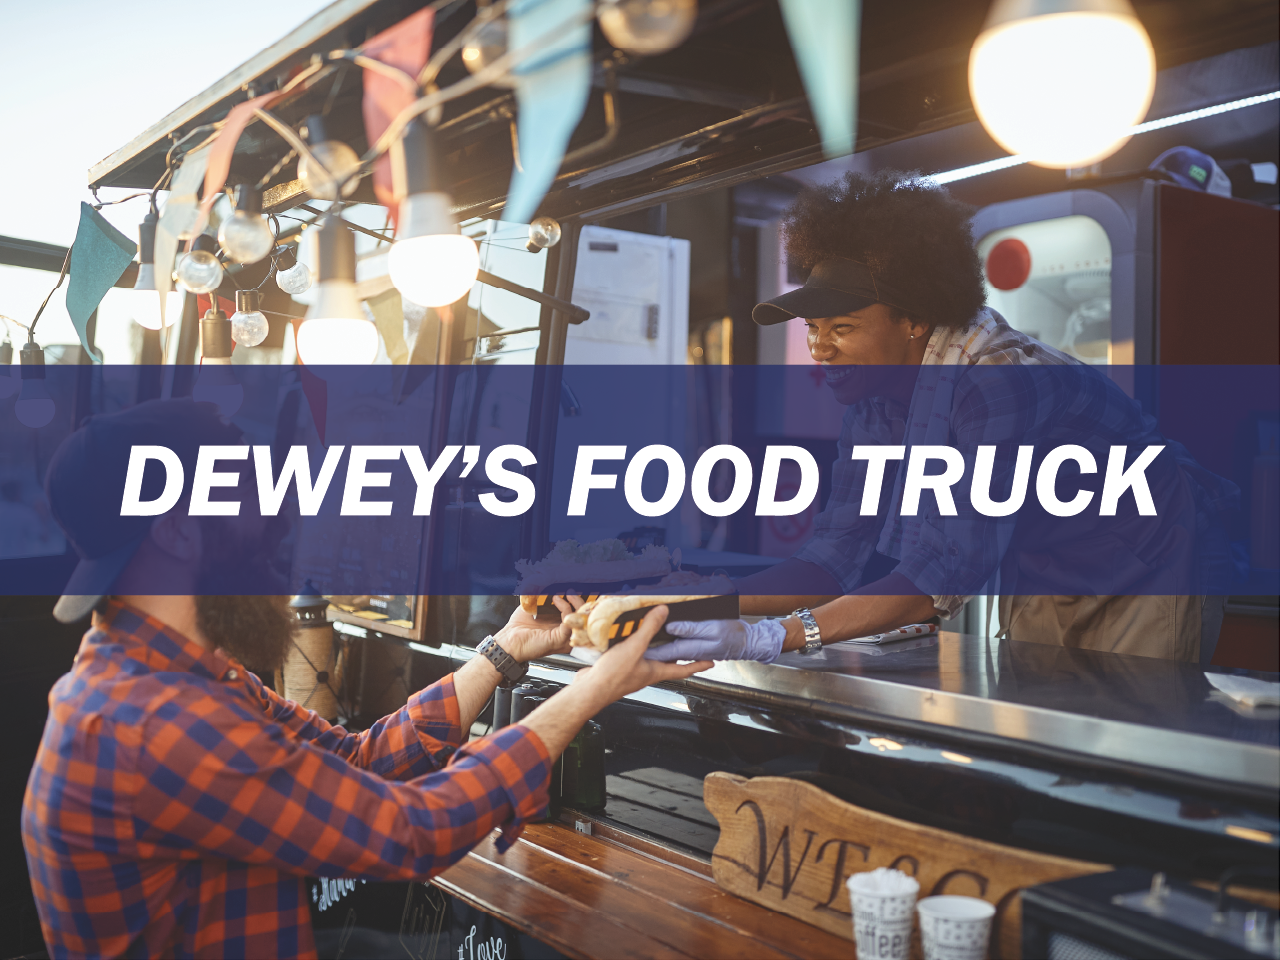 Dewey's Food Truck